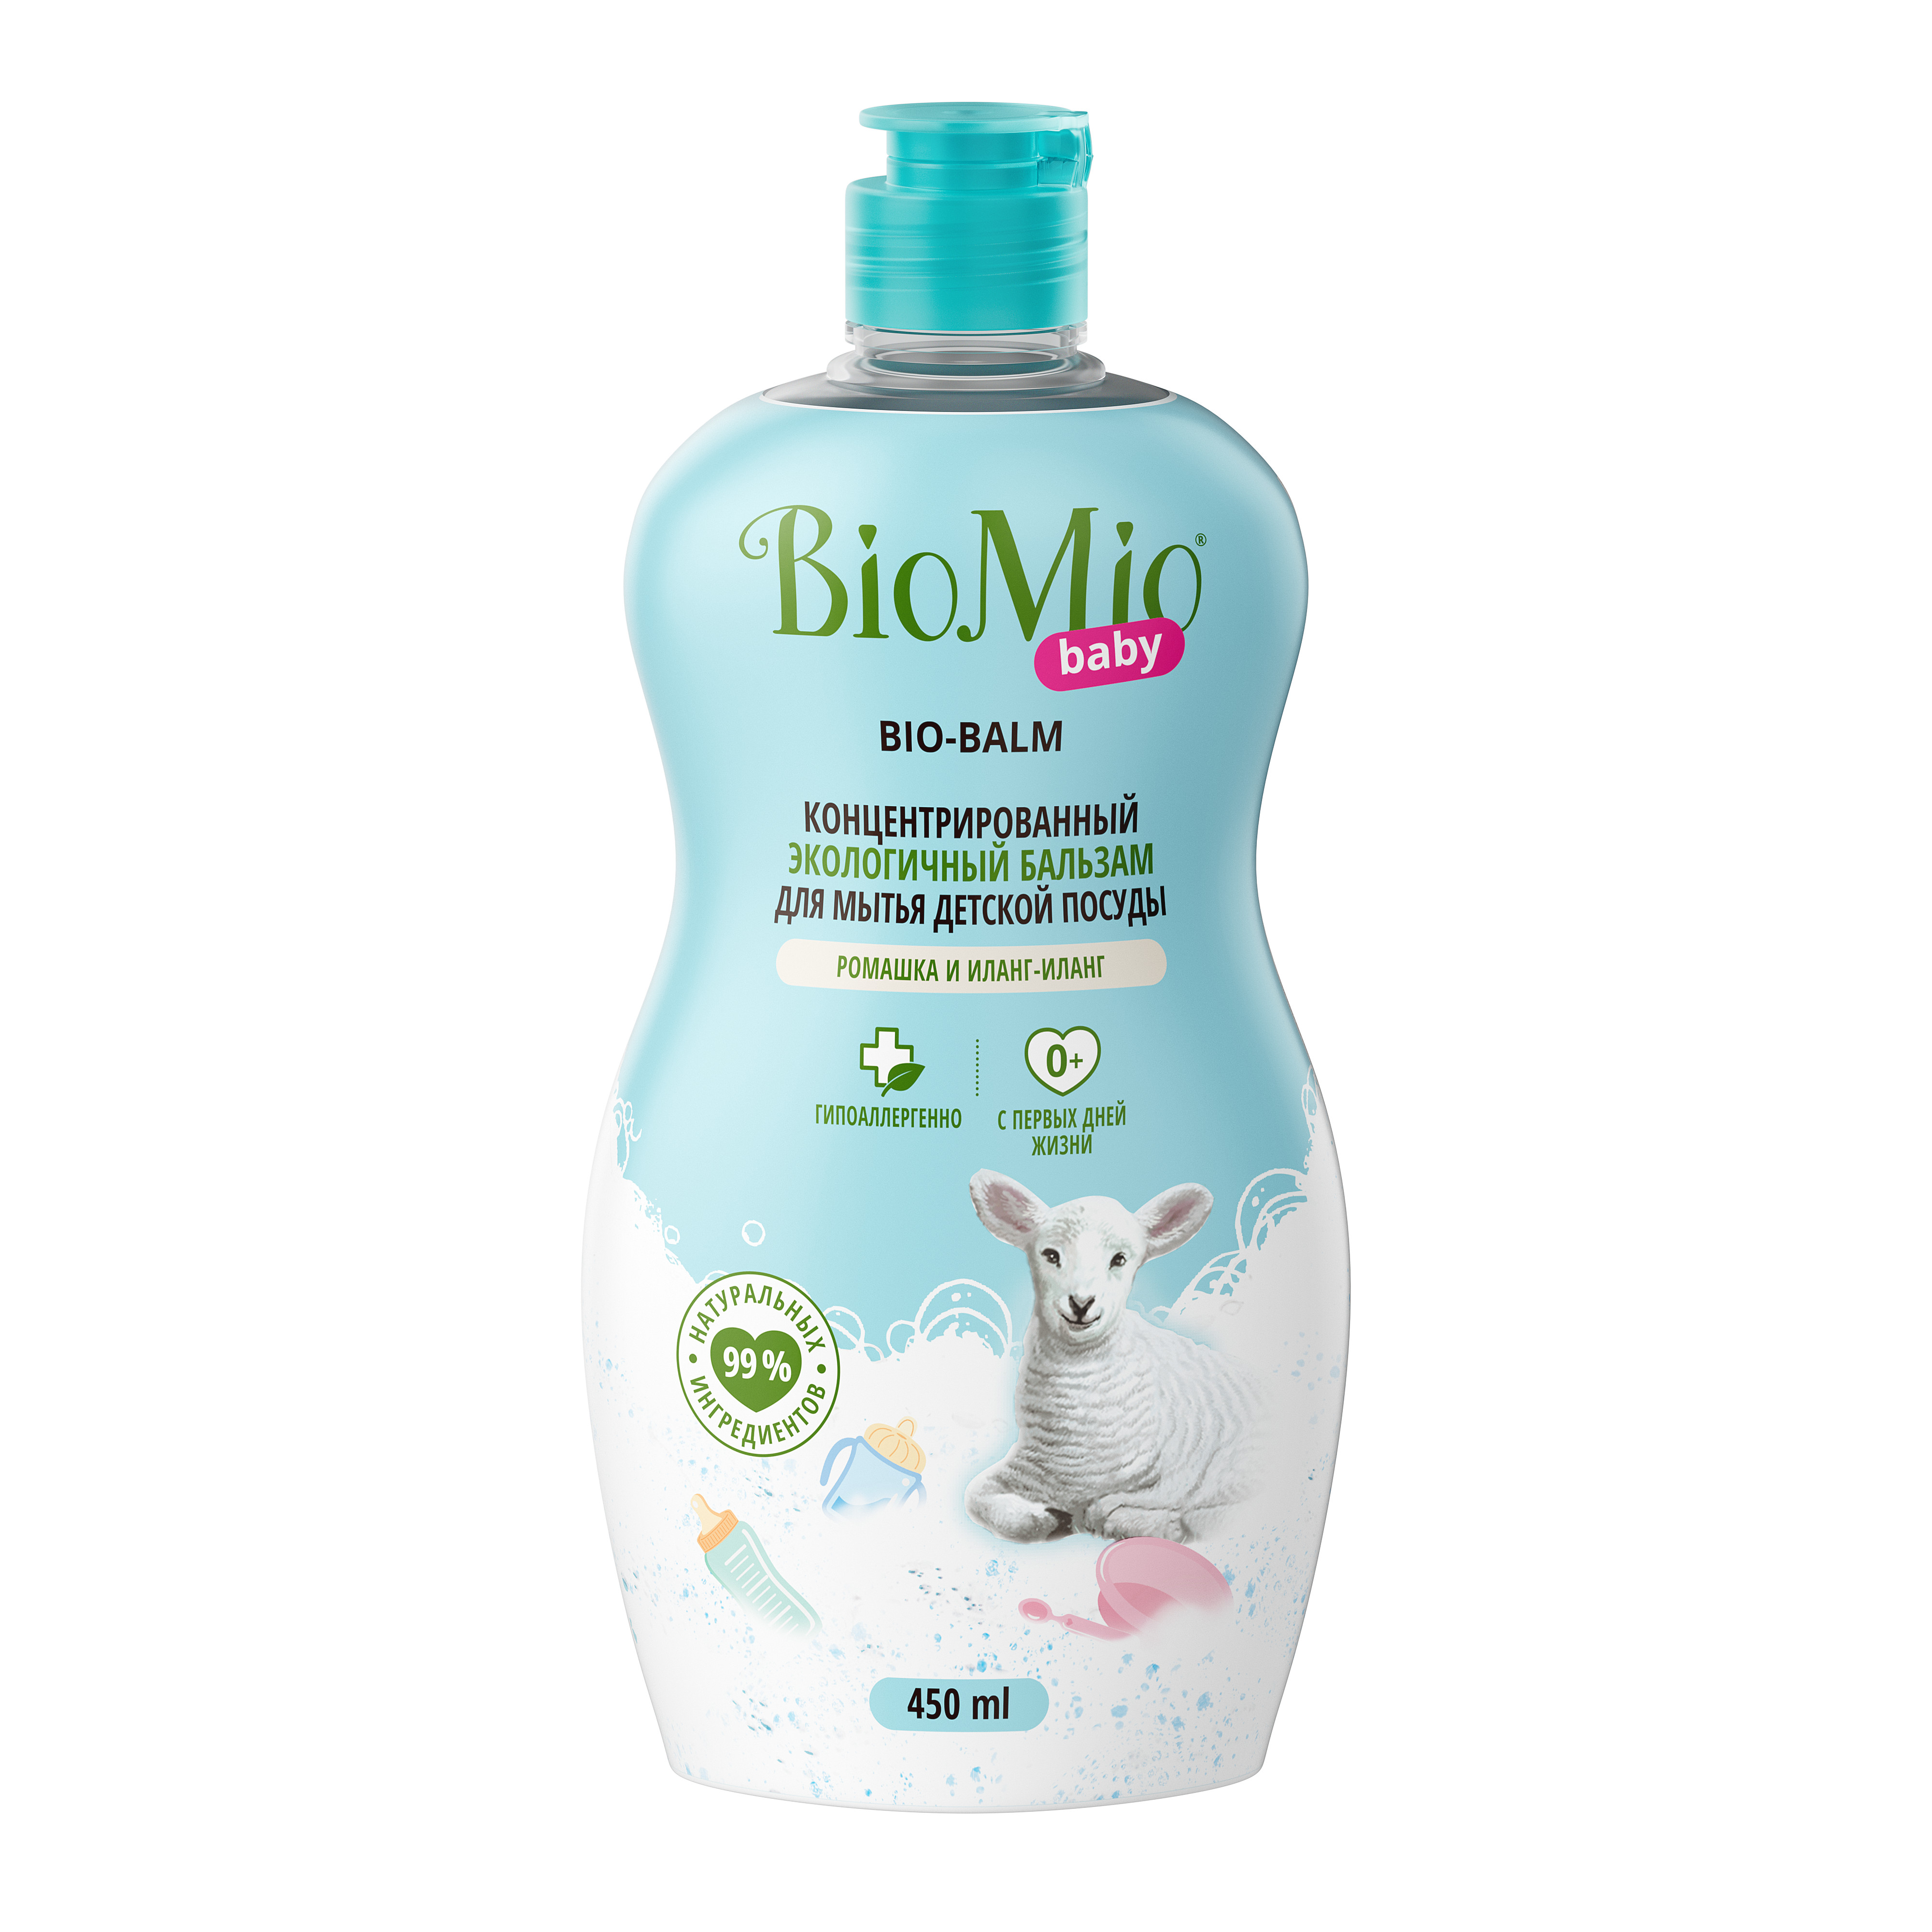 BioMio Экологичный бальзам для мытья детской посуды «Ромашка и иланг-иланг» 0+, 450 мл (BioMio, Посуда) средство для мытья biomio baby bio balm для детской посуды 450 мл